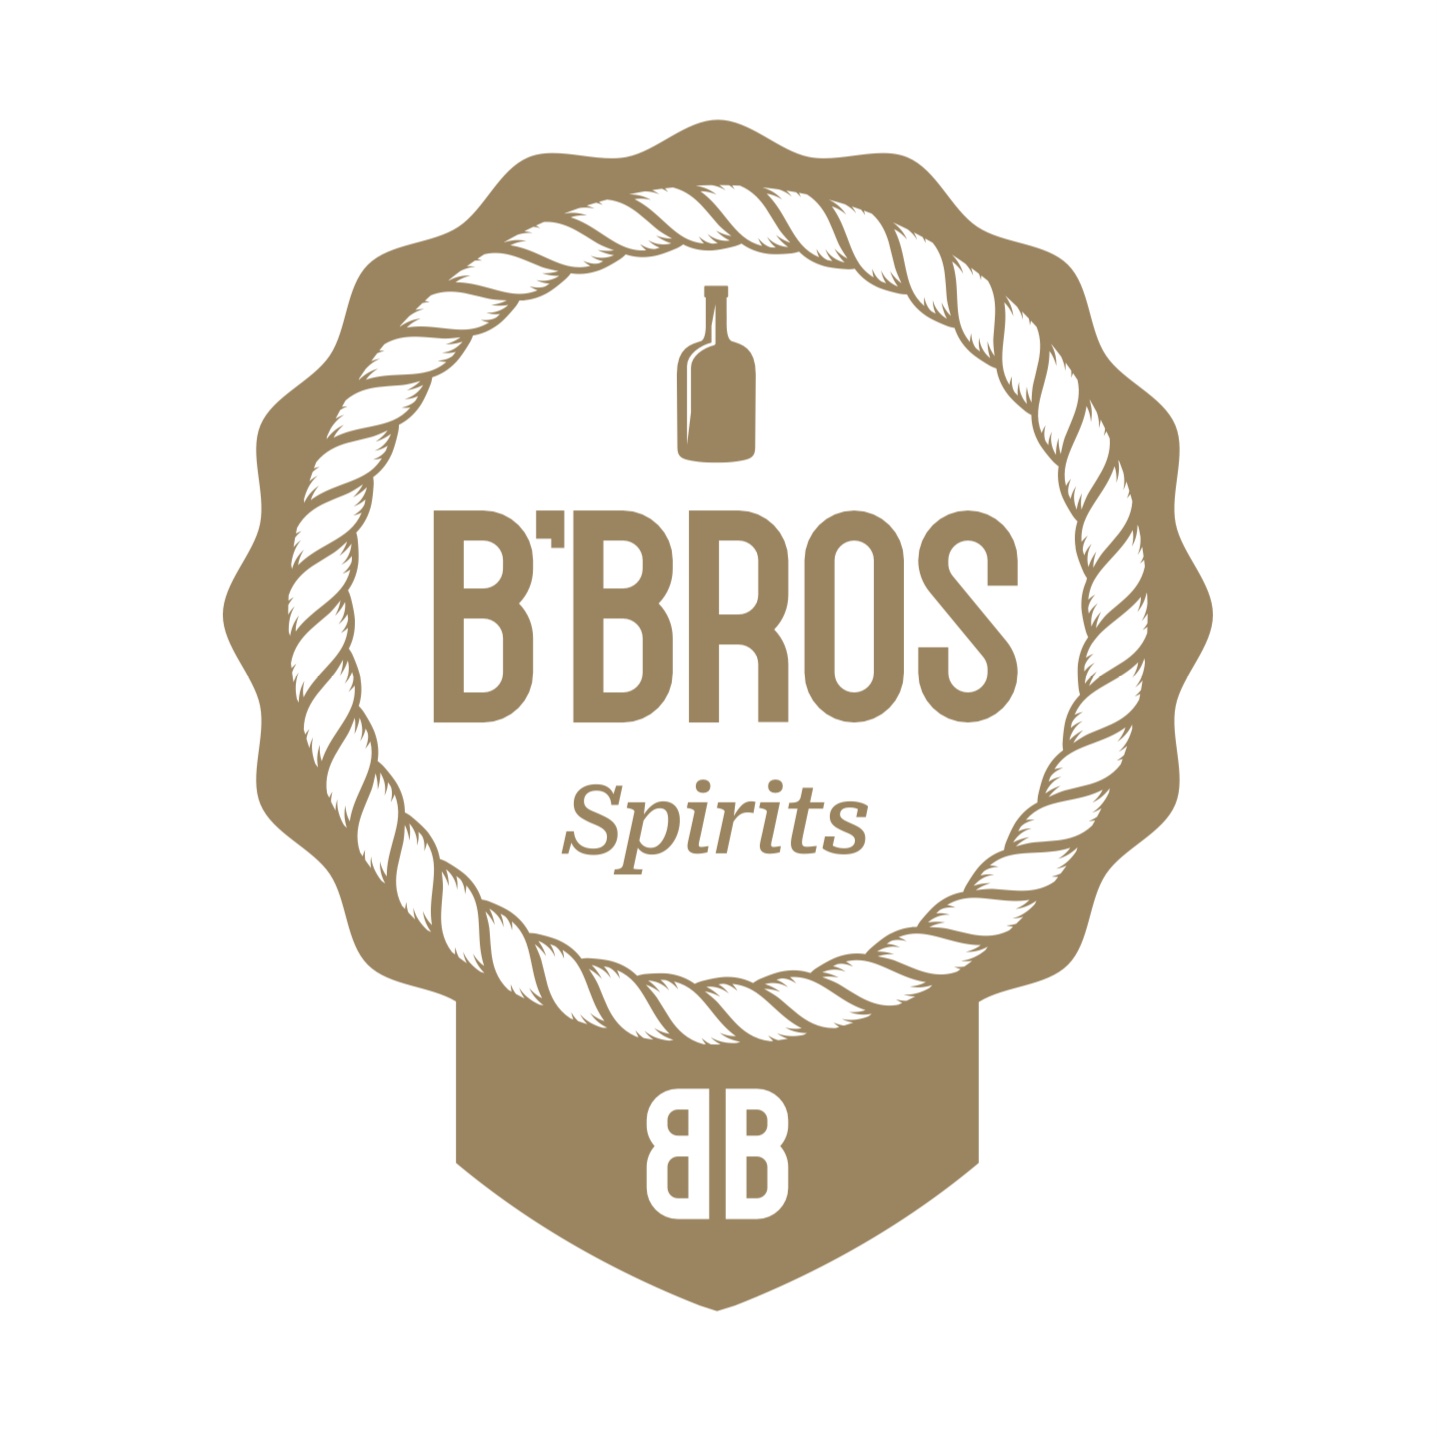 B’Bros Spirits